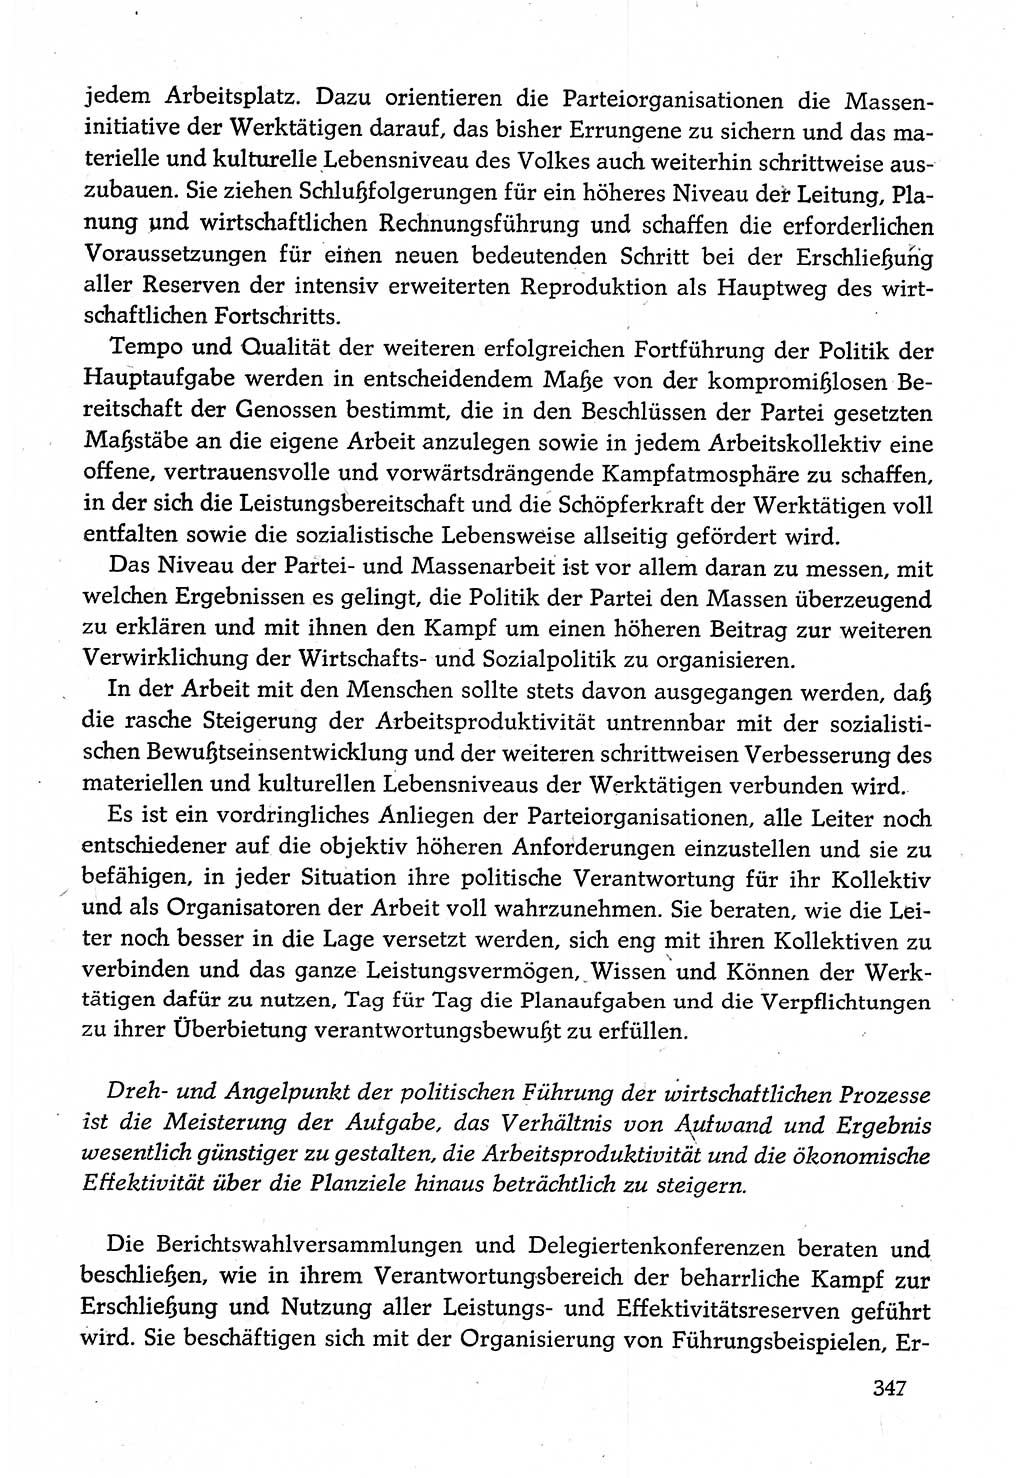 Dokumente der Sozialistischen Einheitspartei Deutschlands (SED) [Deutsche Demokratische Republik (DDR)] 1982-1983, Seite 347 (Dok. SED DDR 1982-1983, S. 347)